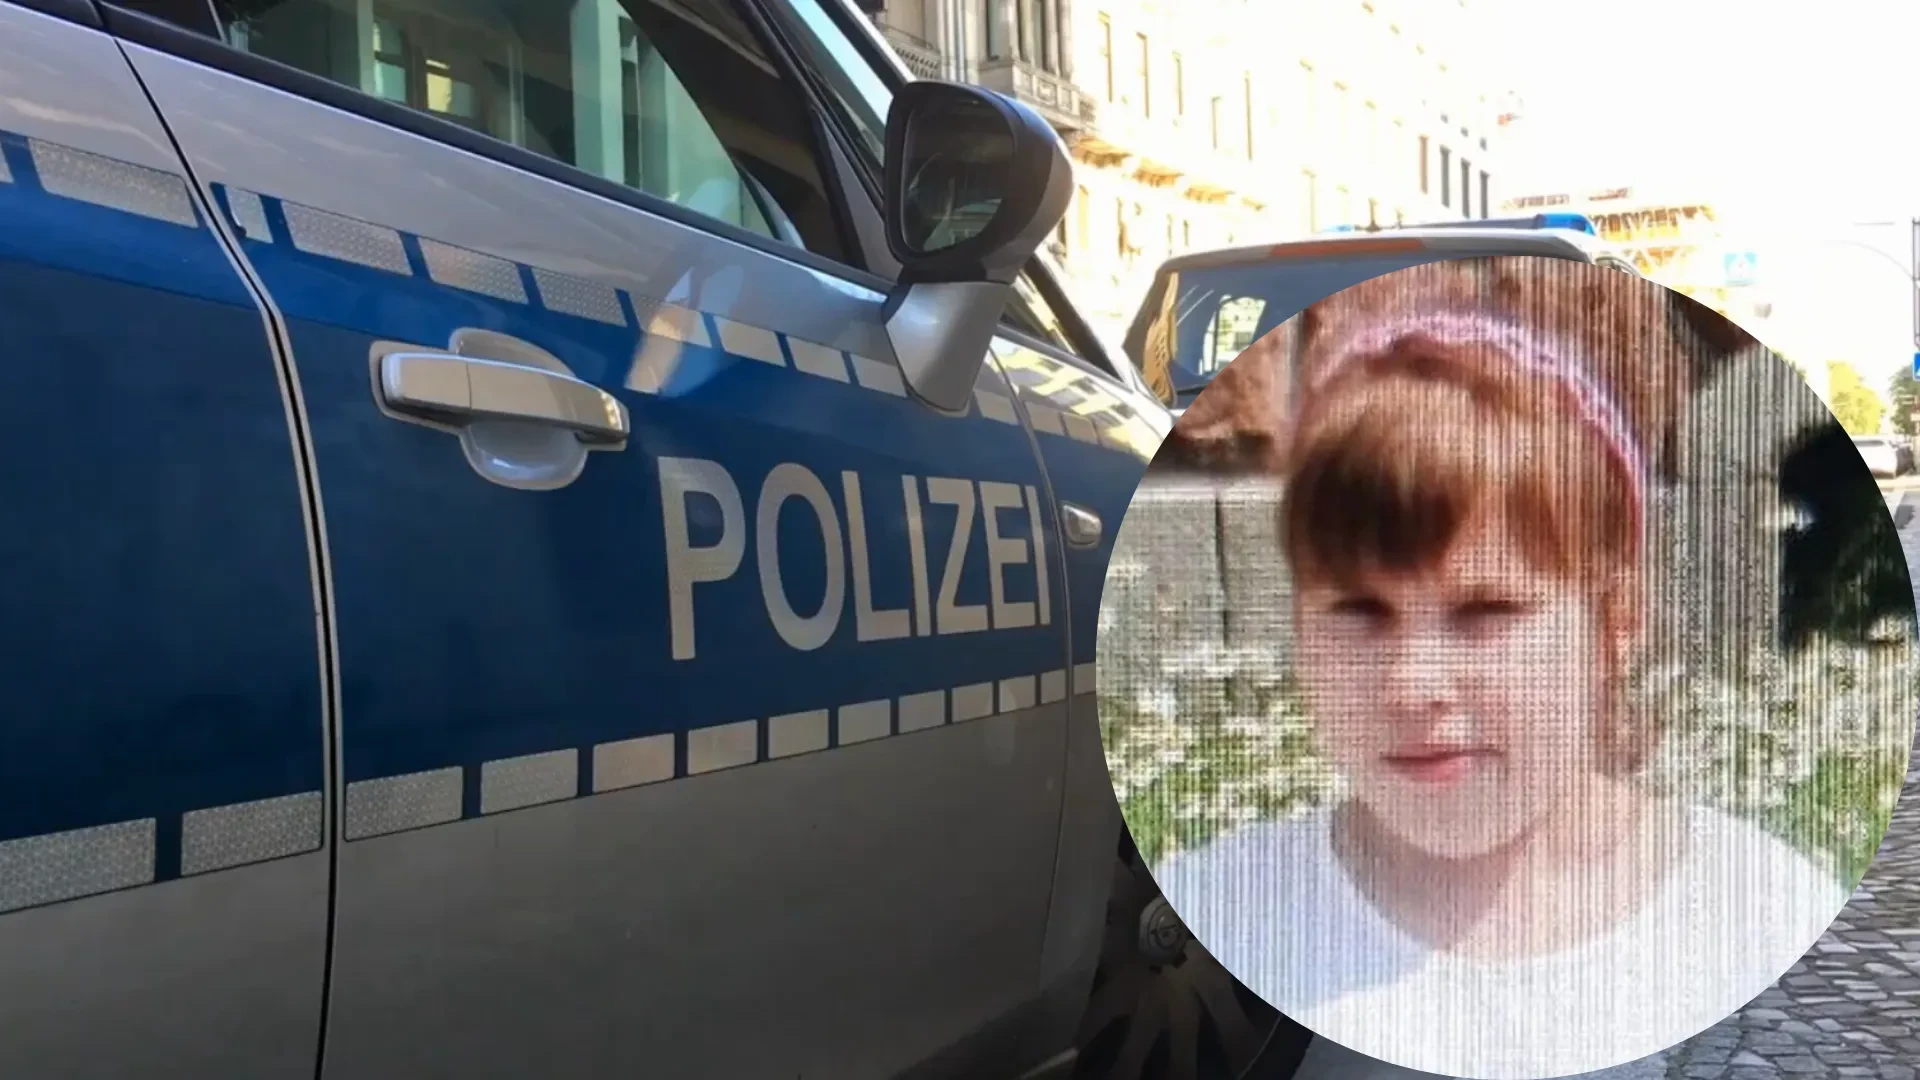 Valeriia (9) verschwindet auf dem Schulweg: Polizei startet große Vermisstensuche – Eltern mit Appell